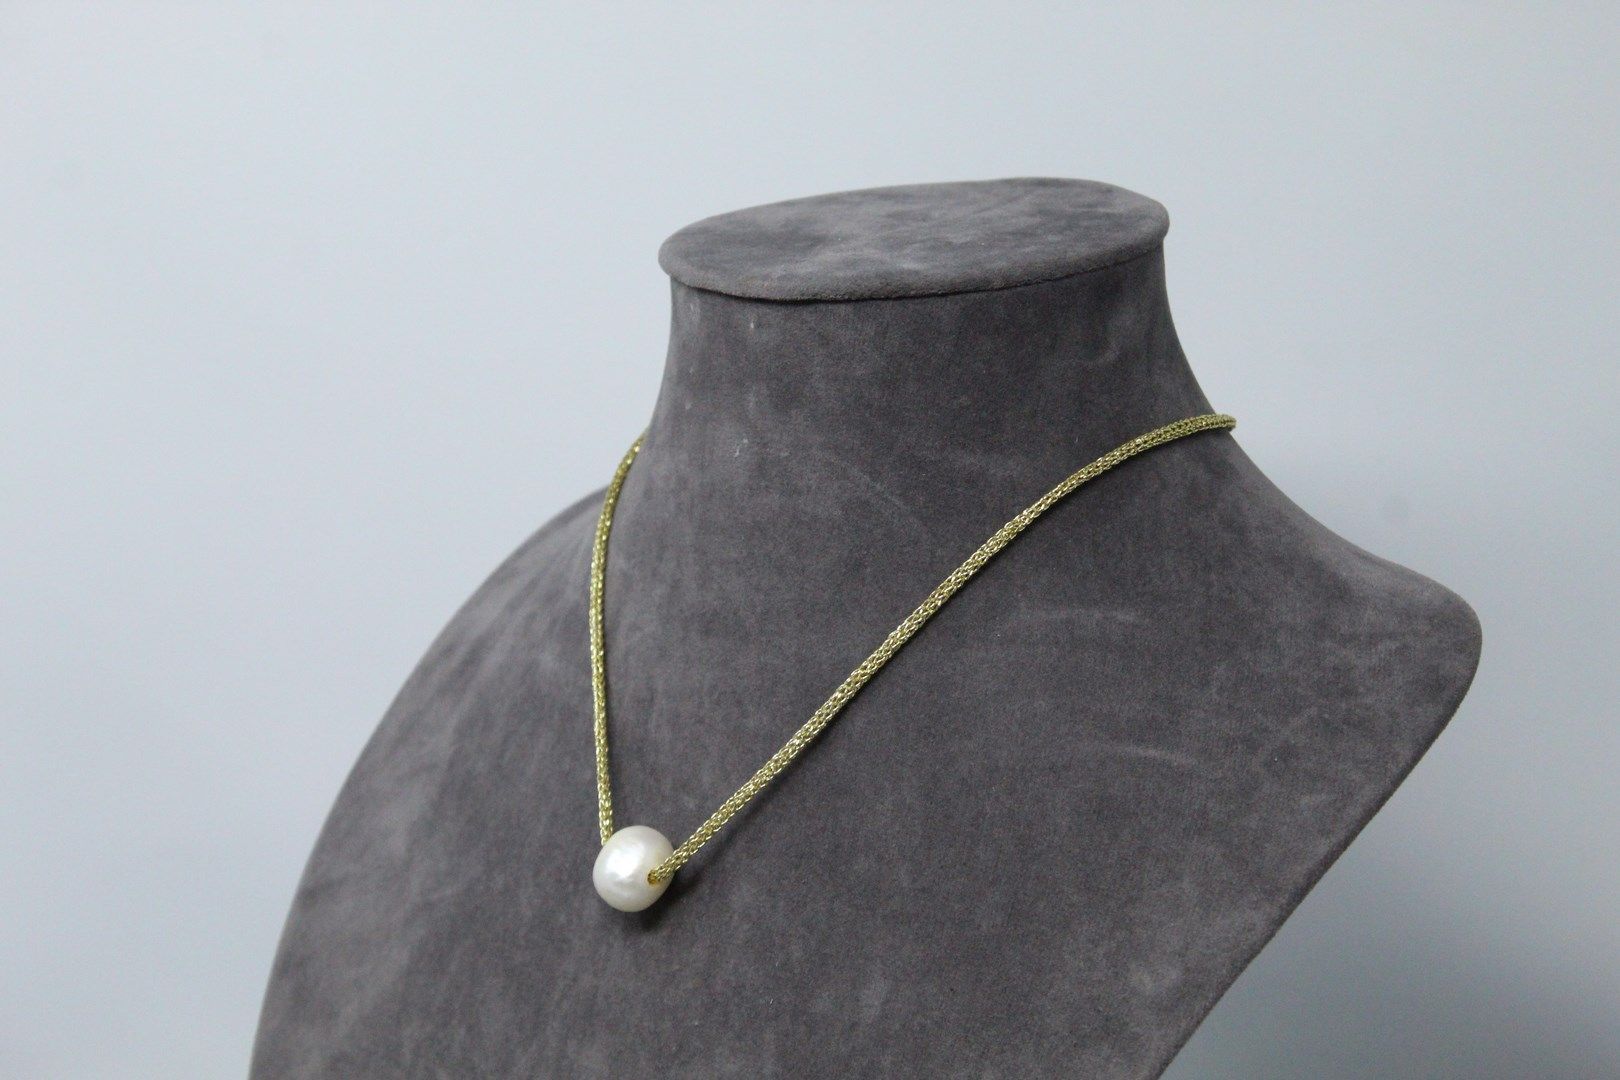 Null 金色绳索制成的项链，饰有一颗大的养殖珍珠。银色和金属的扣子。

项链尺寸： - 毛重：5.63克。